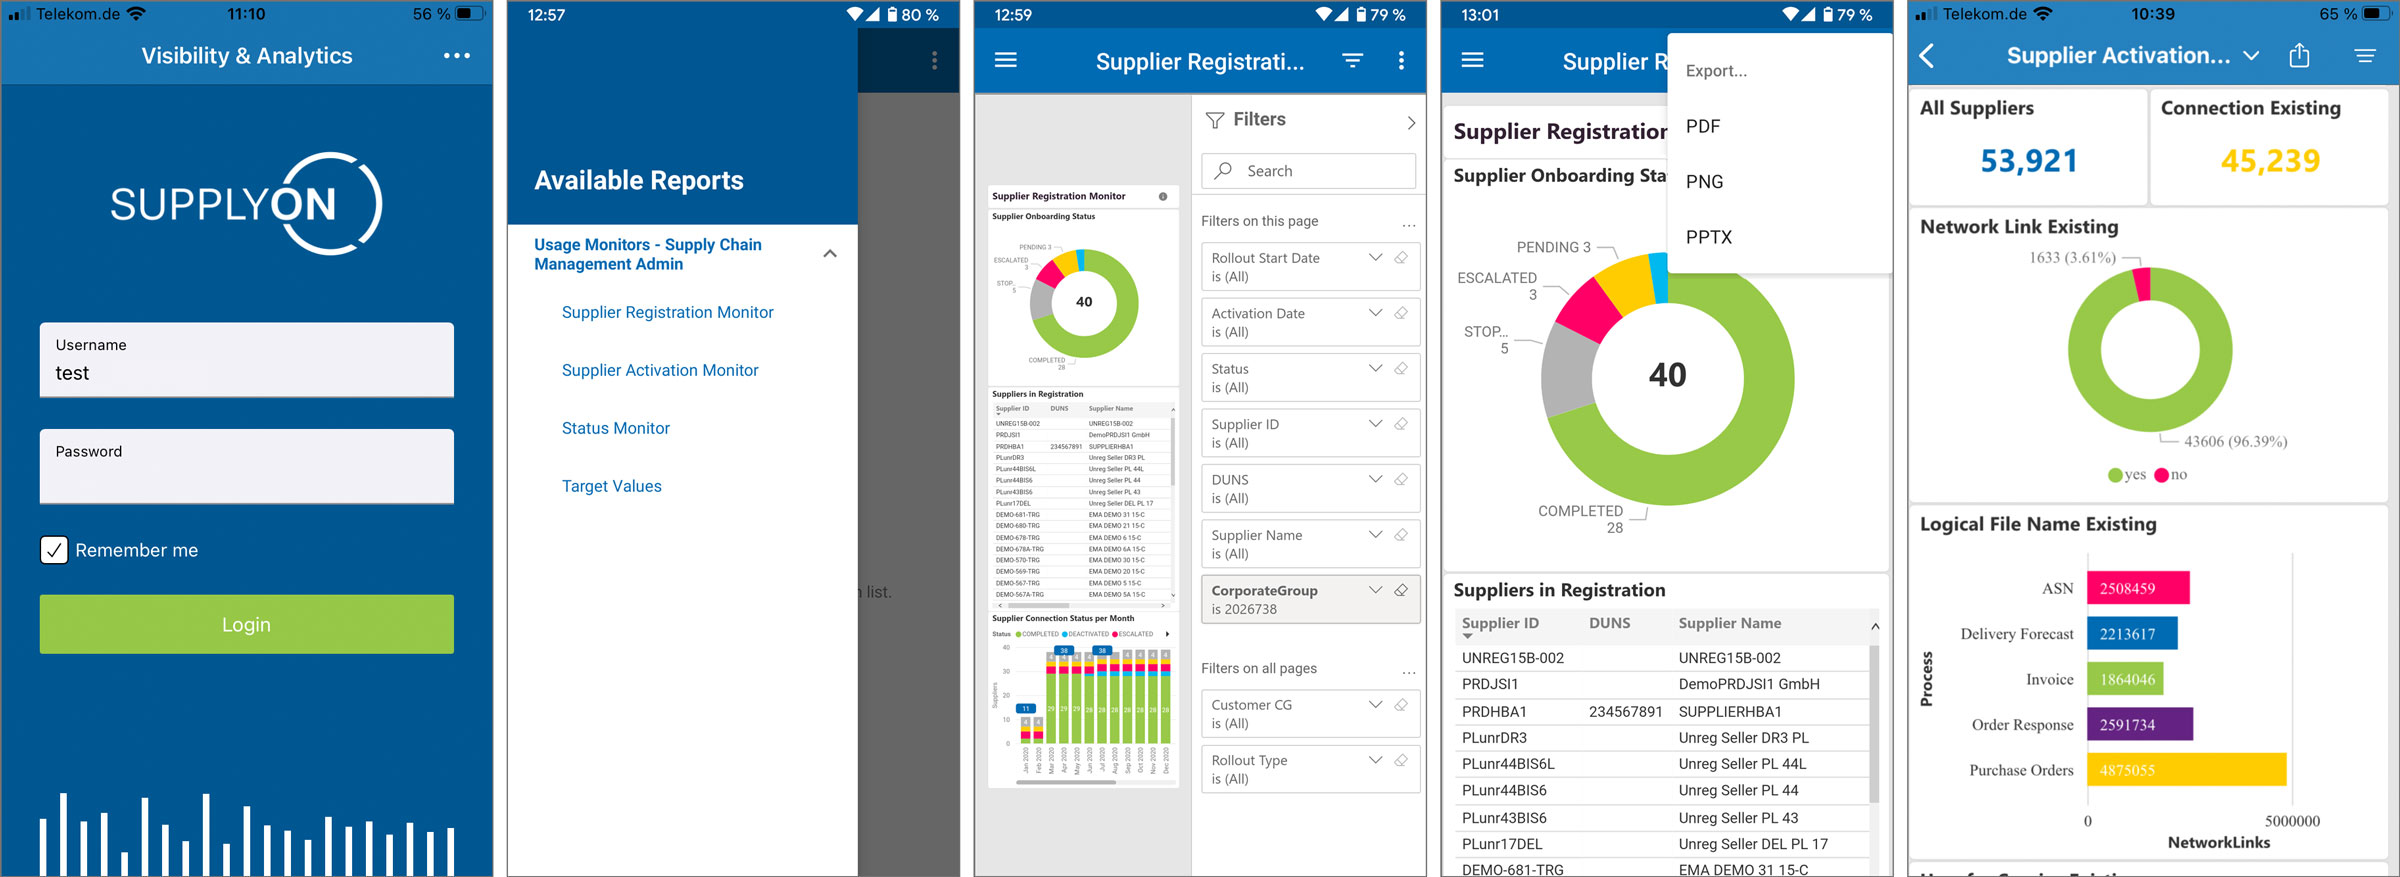 Alle relevanten Informationen auf einen Fingertipp: Die neue SupplyOn Mobile App bietet Ihnen einen komfortablen 24/7-Zugriff auf Ihr Visibility & Analytics Dashboard, egal wo Sie sind